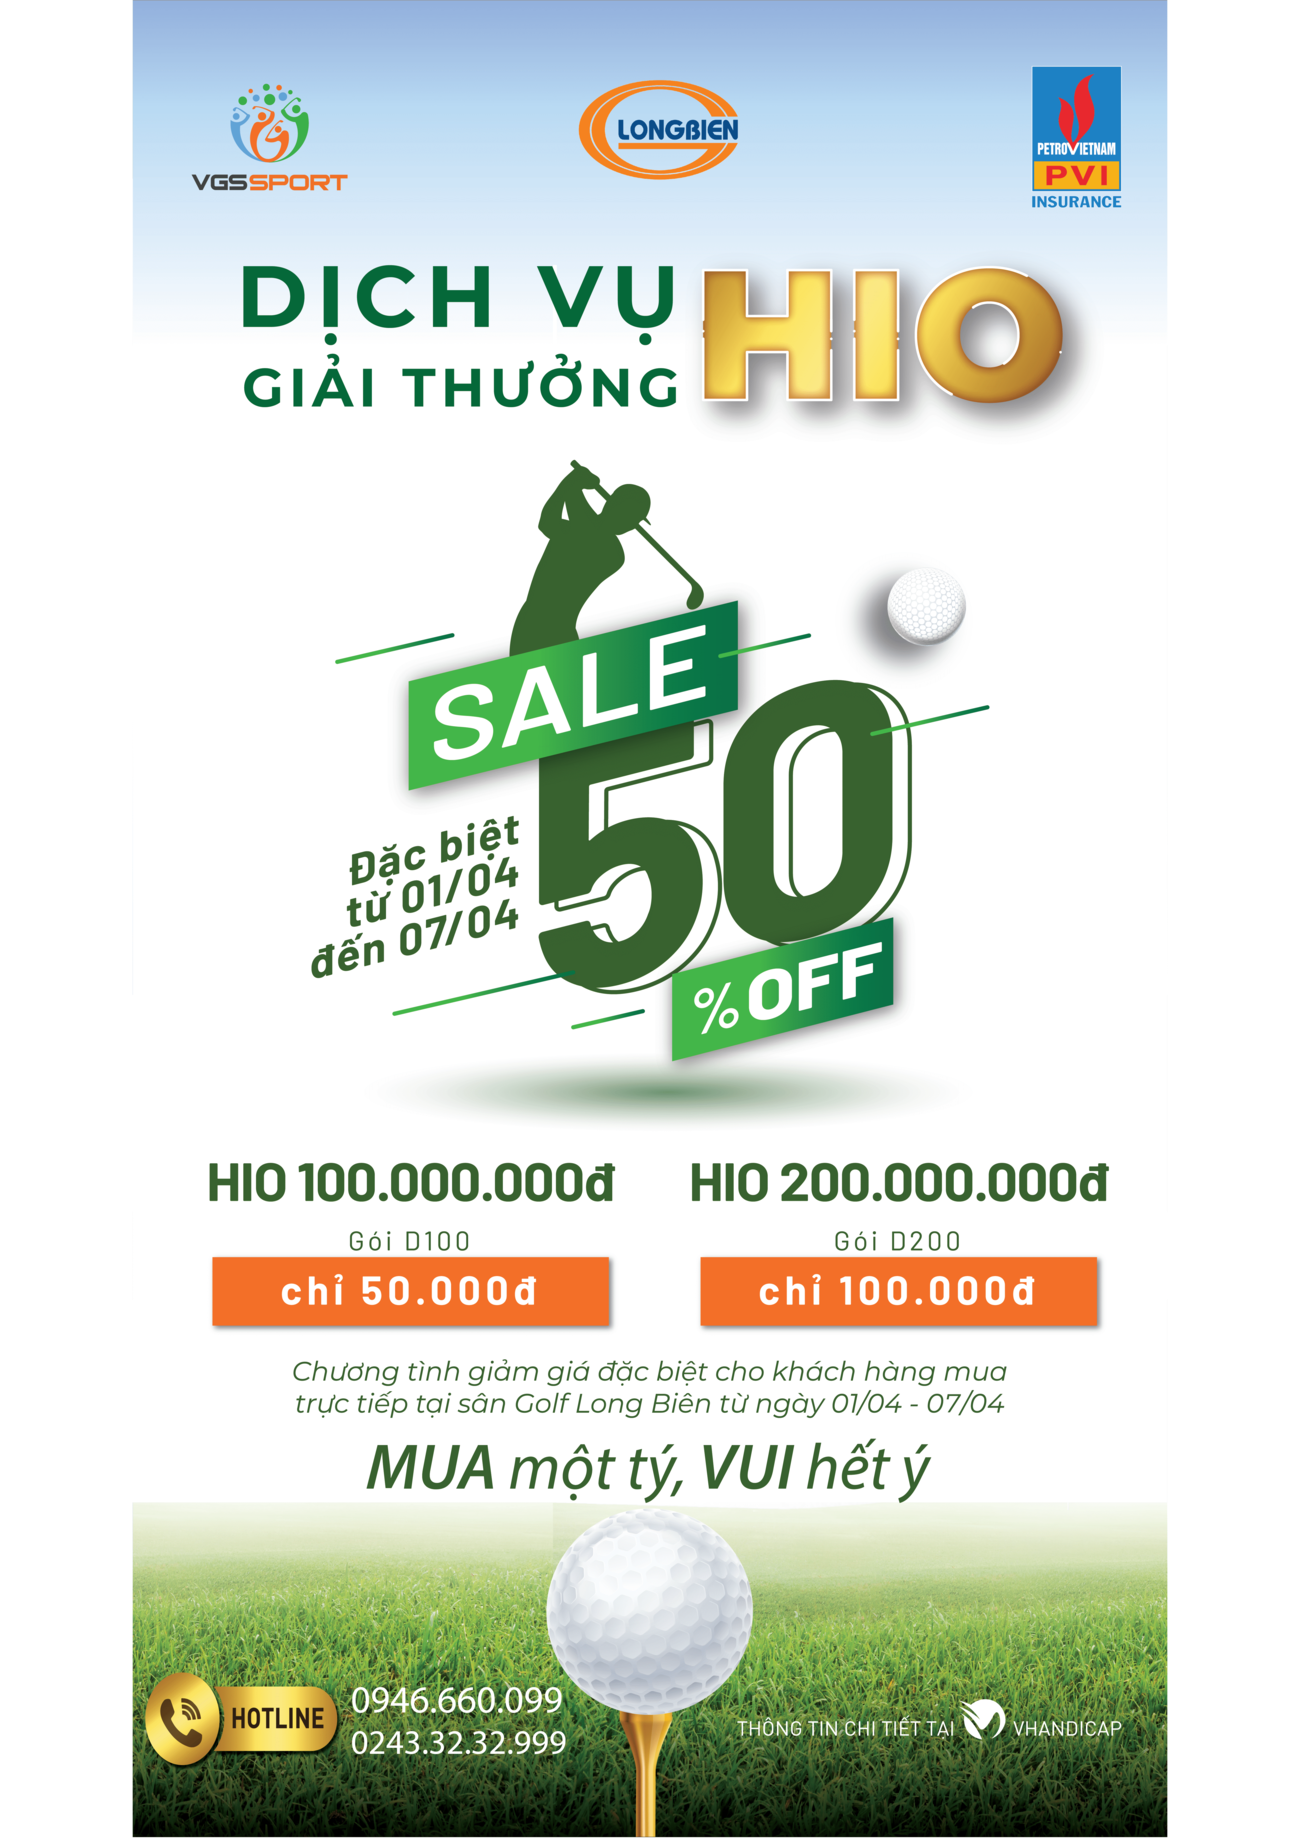 VGS Sport mở gian hàng bán trực tiếp gói Dịch vụ giải thưởng HIO tại sân golf Long Biên - Ảnh 1.